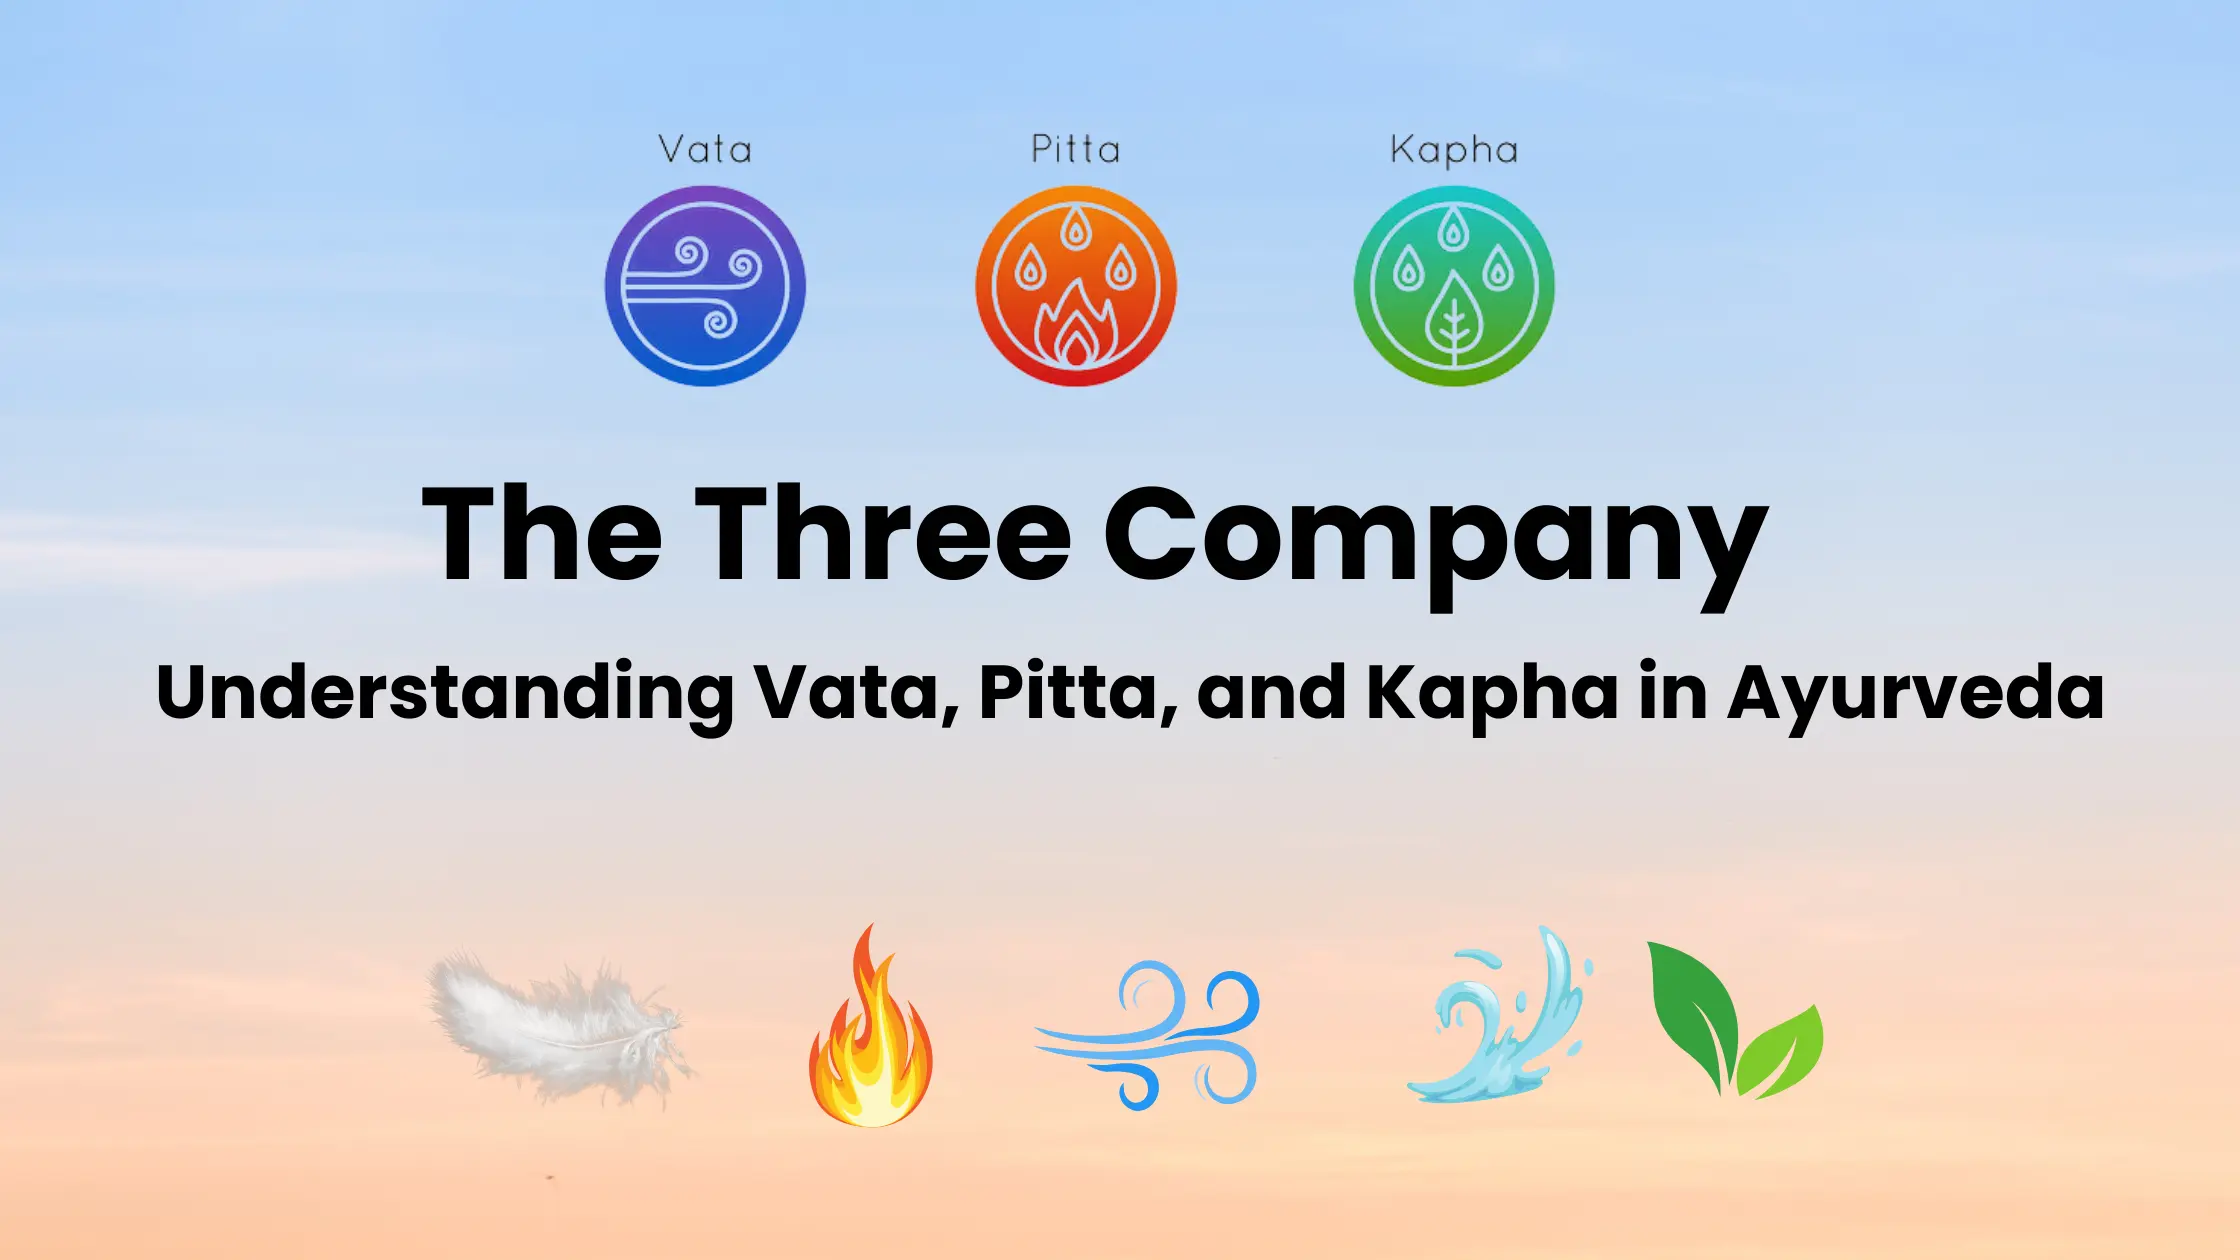 The Three Company